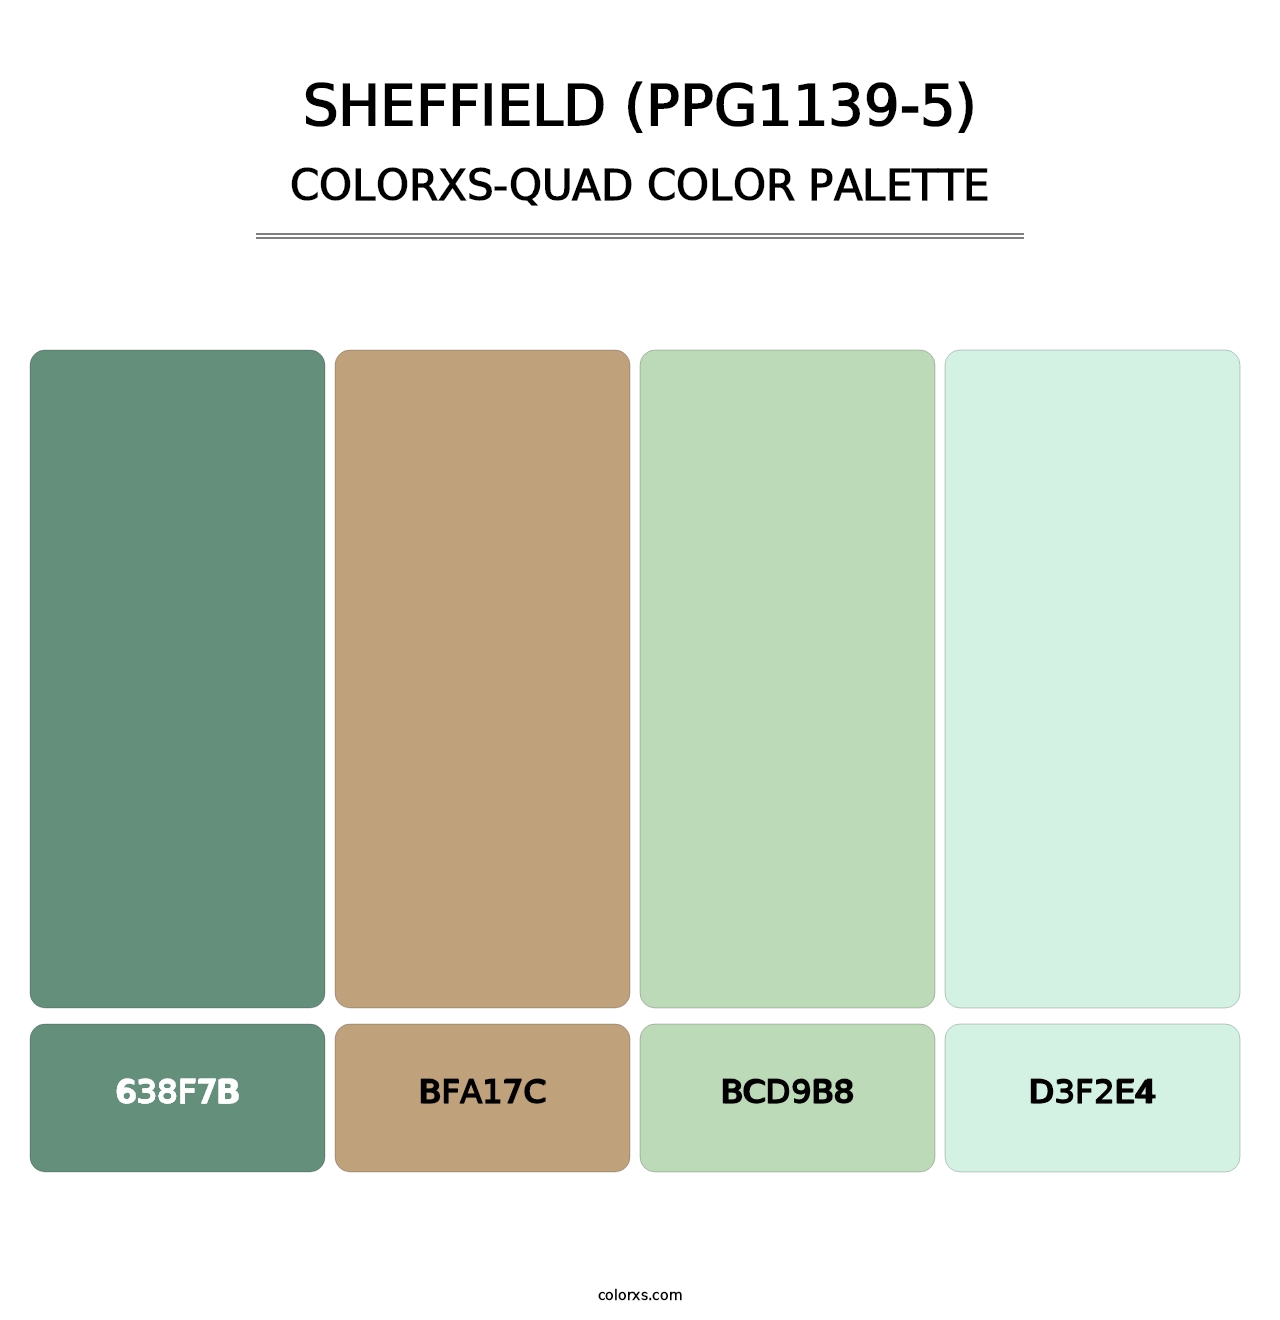 Sheffield (PPG1139-5) - Colorxs Quad Palette